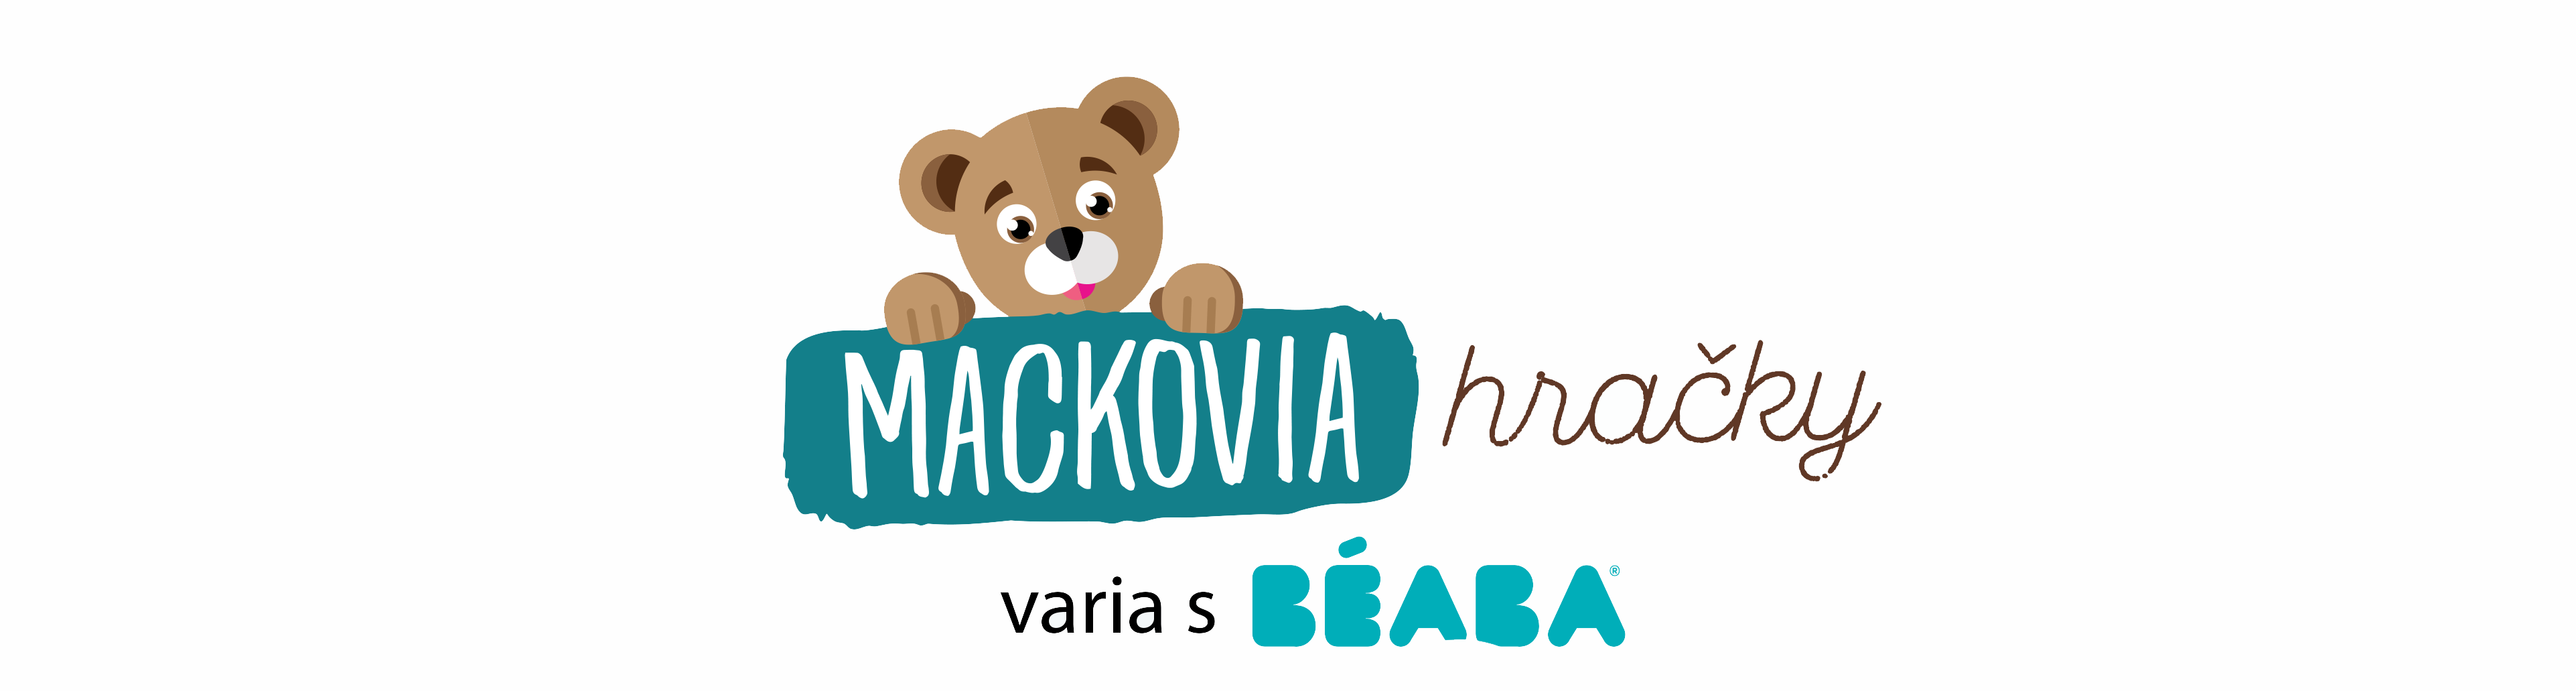 Mackoviahracky.sk